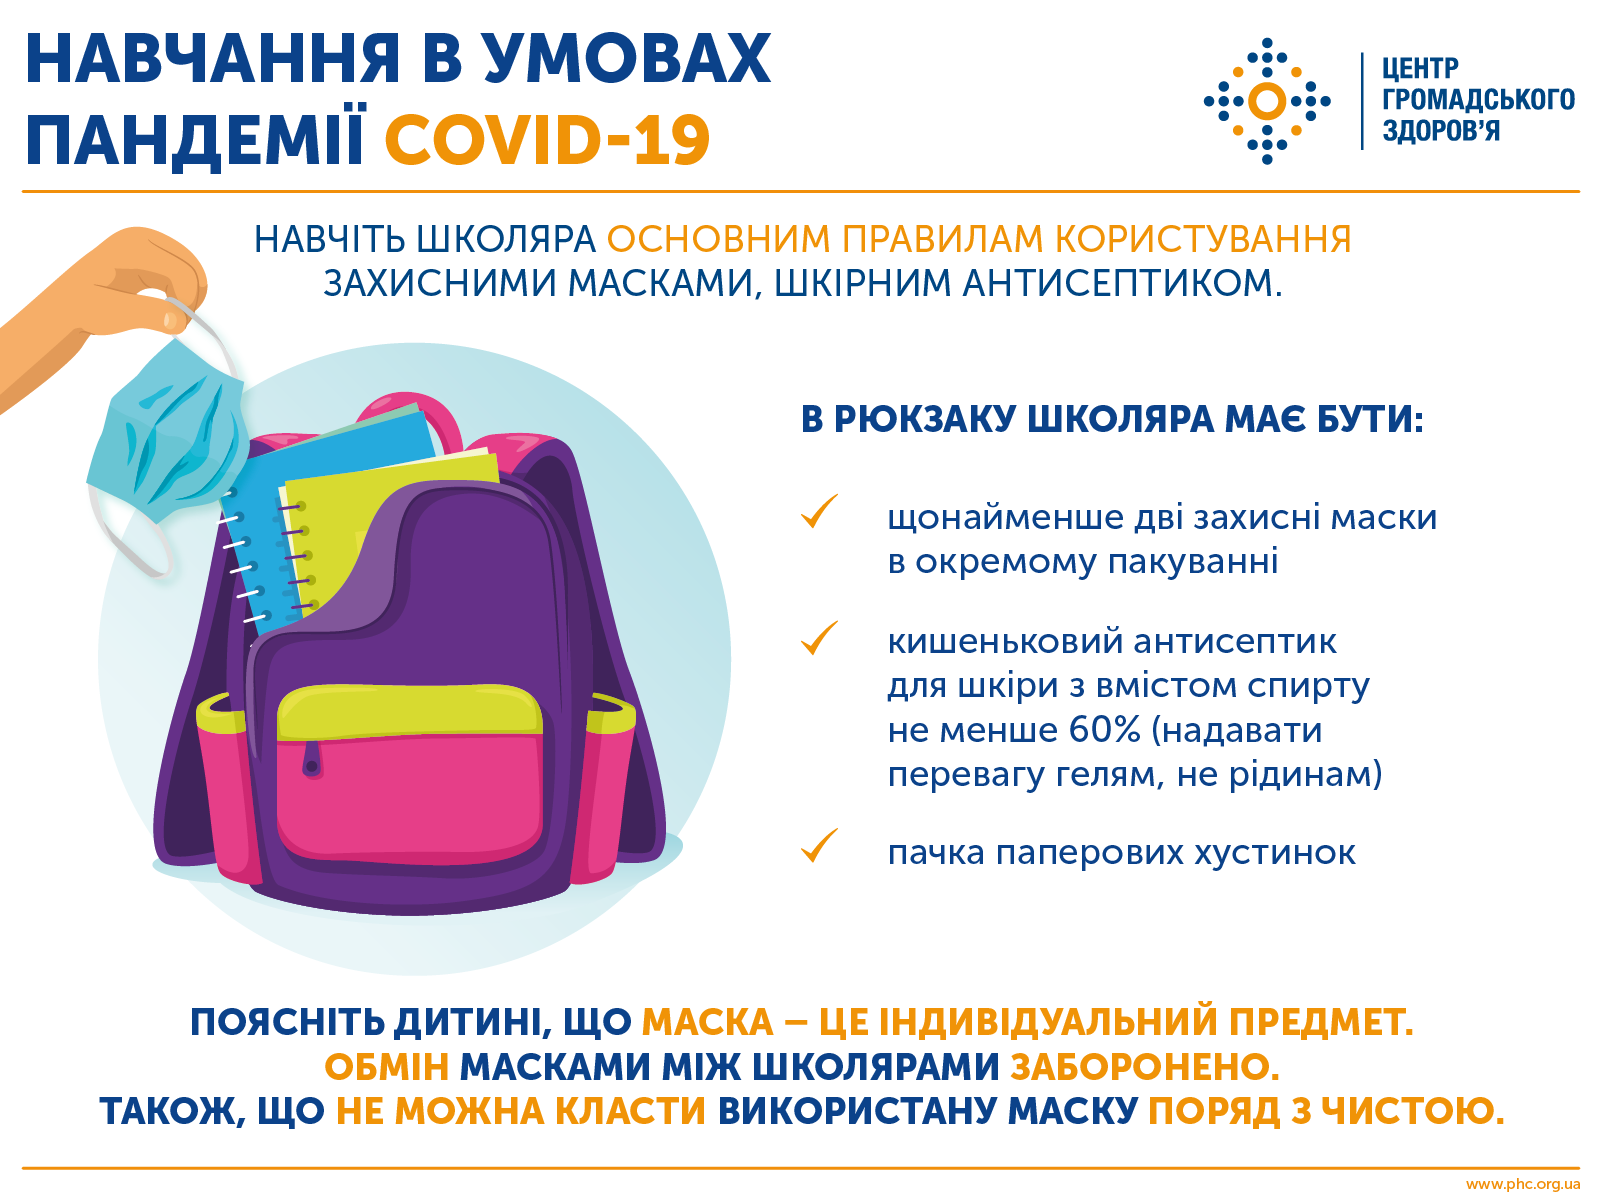 <p>В Минздраве рассказали, что должно быть в рюкзаке школьника для безопасного обучения во время пандемии коронавируса.&nbsp;</p> <p>Об этом рассказали в пресс-службе Центра общественного здоровья в Facebook.</p> <p>"В Украине острой респираторной болезнью COVID-19 заболело 130 951 человек, среди которых 6,5% детей в возрасте до 17 лет. Дети менее склонны к развитию тяжелых форм заболевания COVID-19, чем взрослые, однако риск инфицирования SARS-CoV-2 среди детей такой же, как в других возрастных категориях", - указано в сообщении.</p> <p>В рюкзаке школьника должно быть:</p> <ul> <li>по меньшей мере две защитные маски;</li> <li>карманный антисептик для кожи с содержанием спирта не менее 60% (отдавать предпочтение гелям, не жидкость)</li> <li>бумажные платочки.</li> </ul> <p>Для масок желательно выделить отдельный карман, а ребенка научить правильно ими пользоваться и утилизировать. Стоит объяснить, что&nbsp;маска - это предмет личного пользования. Обмениваться масками запрещено. Также нельзя класть использованную маску рядом с чистой. Детям до 14 лет использовать антисептик Не рекомендуется.</p> <p><img src="/img/forall/u/11/58/photo5373357237143187035.jpg" alt="Как подготовить ребенка в школу на карантине" width="540" height="582" /></p> <p>Напомним, в&nbsp;Киеве <a href="/news/287882-koronavirusom-zarazilis-uchitelja-dvukh-shkol-kieva.html">у учителей из двух школ обнаружили коронавирус</a>. Эти учебные заведения перевели на дистанционное обучение.&nbsp;</p> <p>Как сообщала "Страна", глава&nbsp;Всемирной организации здравоохранения (ВОЗ)&nbsp;Тедрос Адханом Гебрейесус заявил, что при появлении вакцины от коронавируса<a href="/news/287944-v-voz-nazvali-hruppy-lits-komu-nuzhny-privivki-ot-koronavirusa-v-pervuju-ochered.html"> ее нужно будет распределять в первую очередь среди определенных групп населения по всему миру</a>. К ним относятся люди из групп риска и работники важнейших сфер экономики.</p>